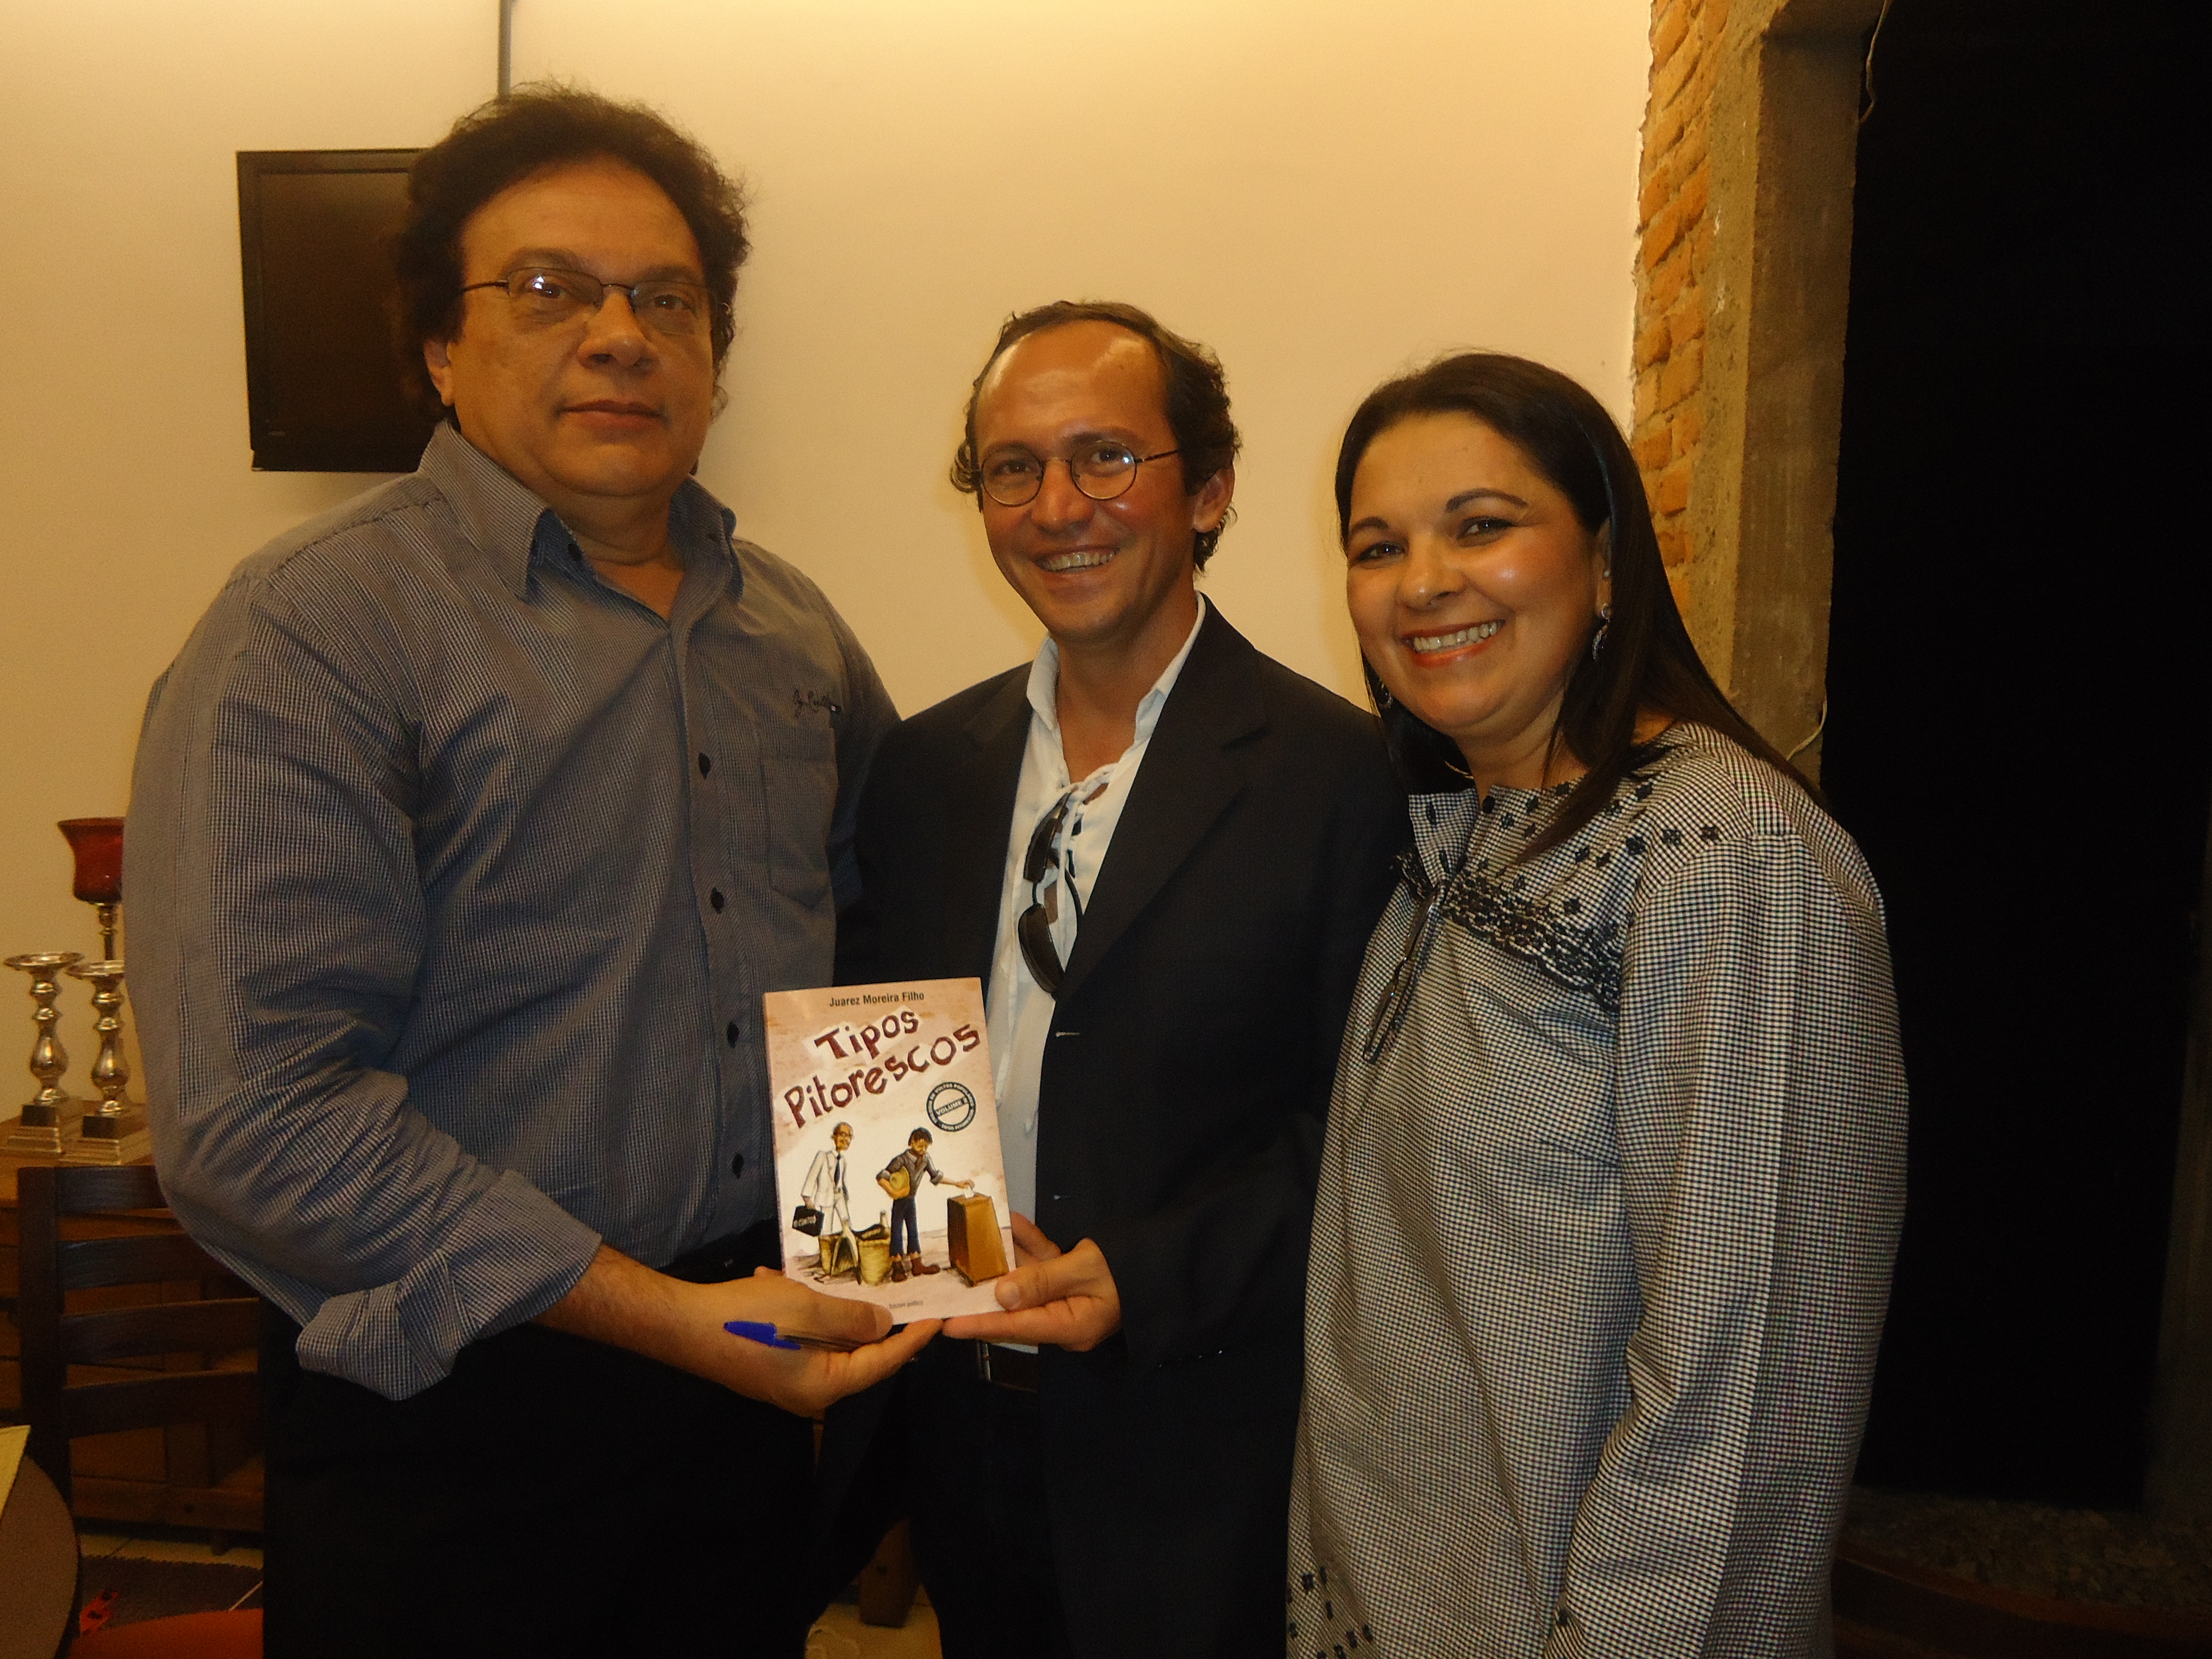 Os professores Wellitania e Fabiano, com o escritor Juarez Moreira Filho